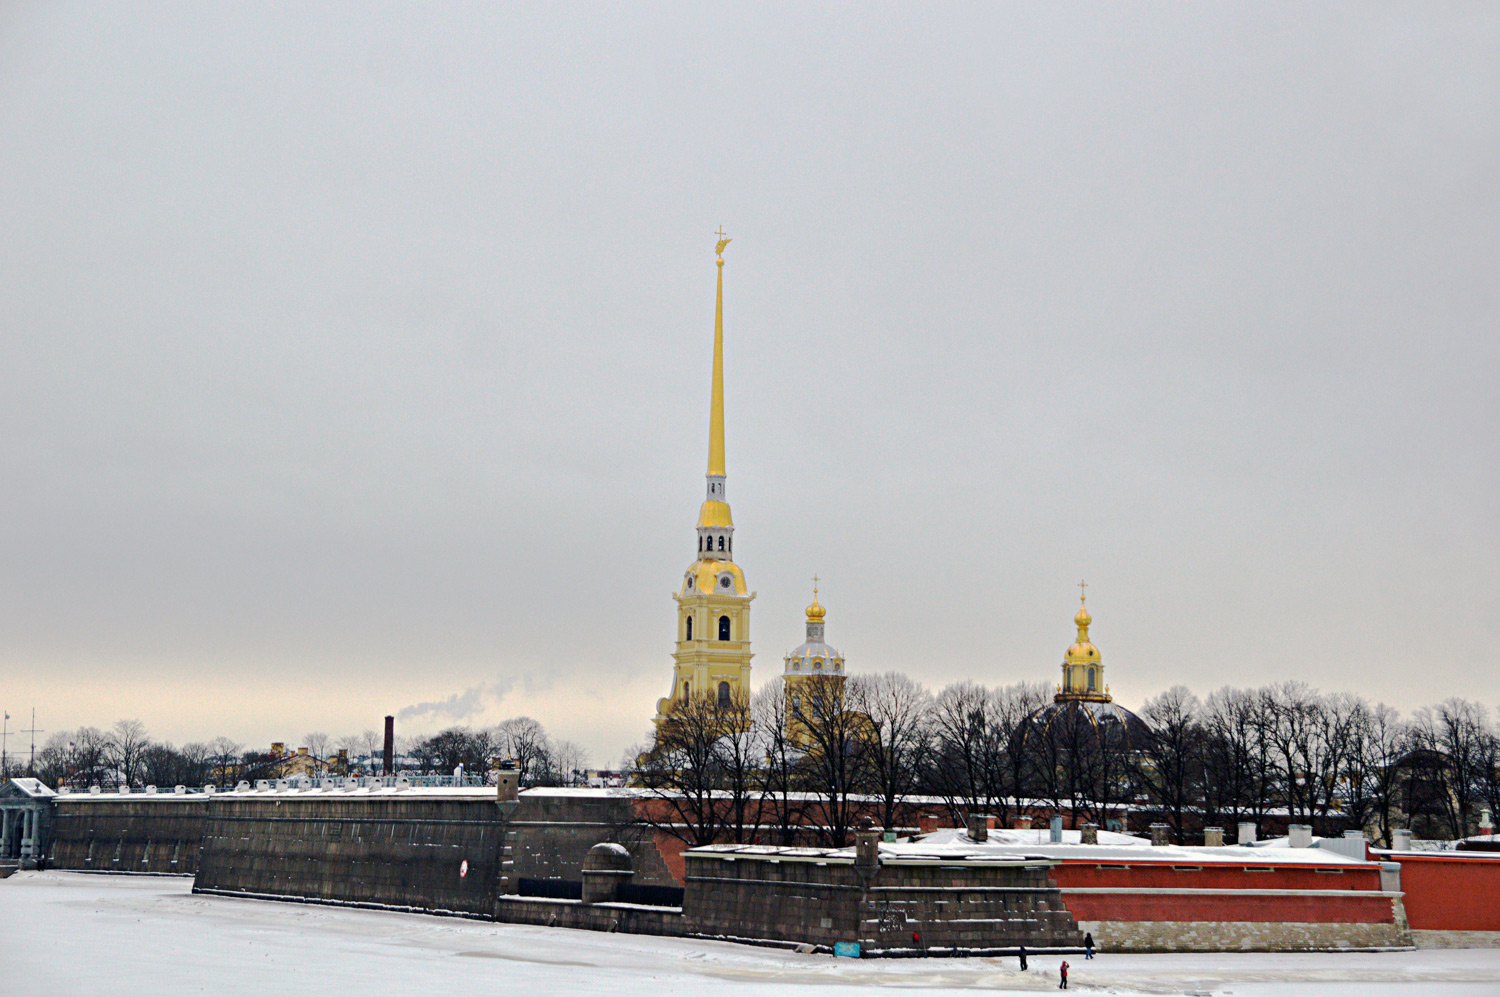 Sankt Petersburg, Петропавловская крепость, Иоанновские ворота